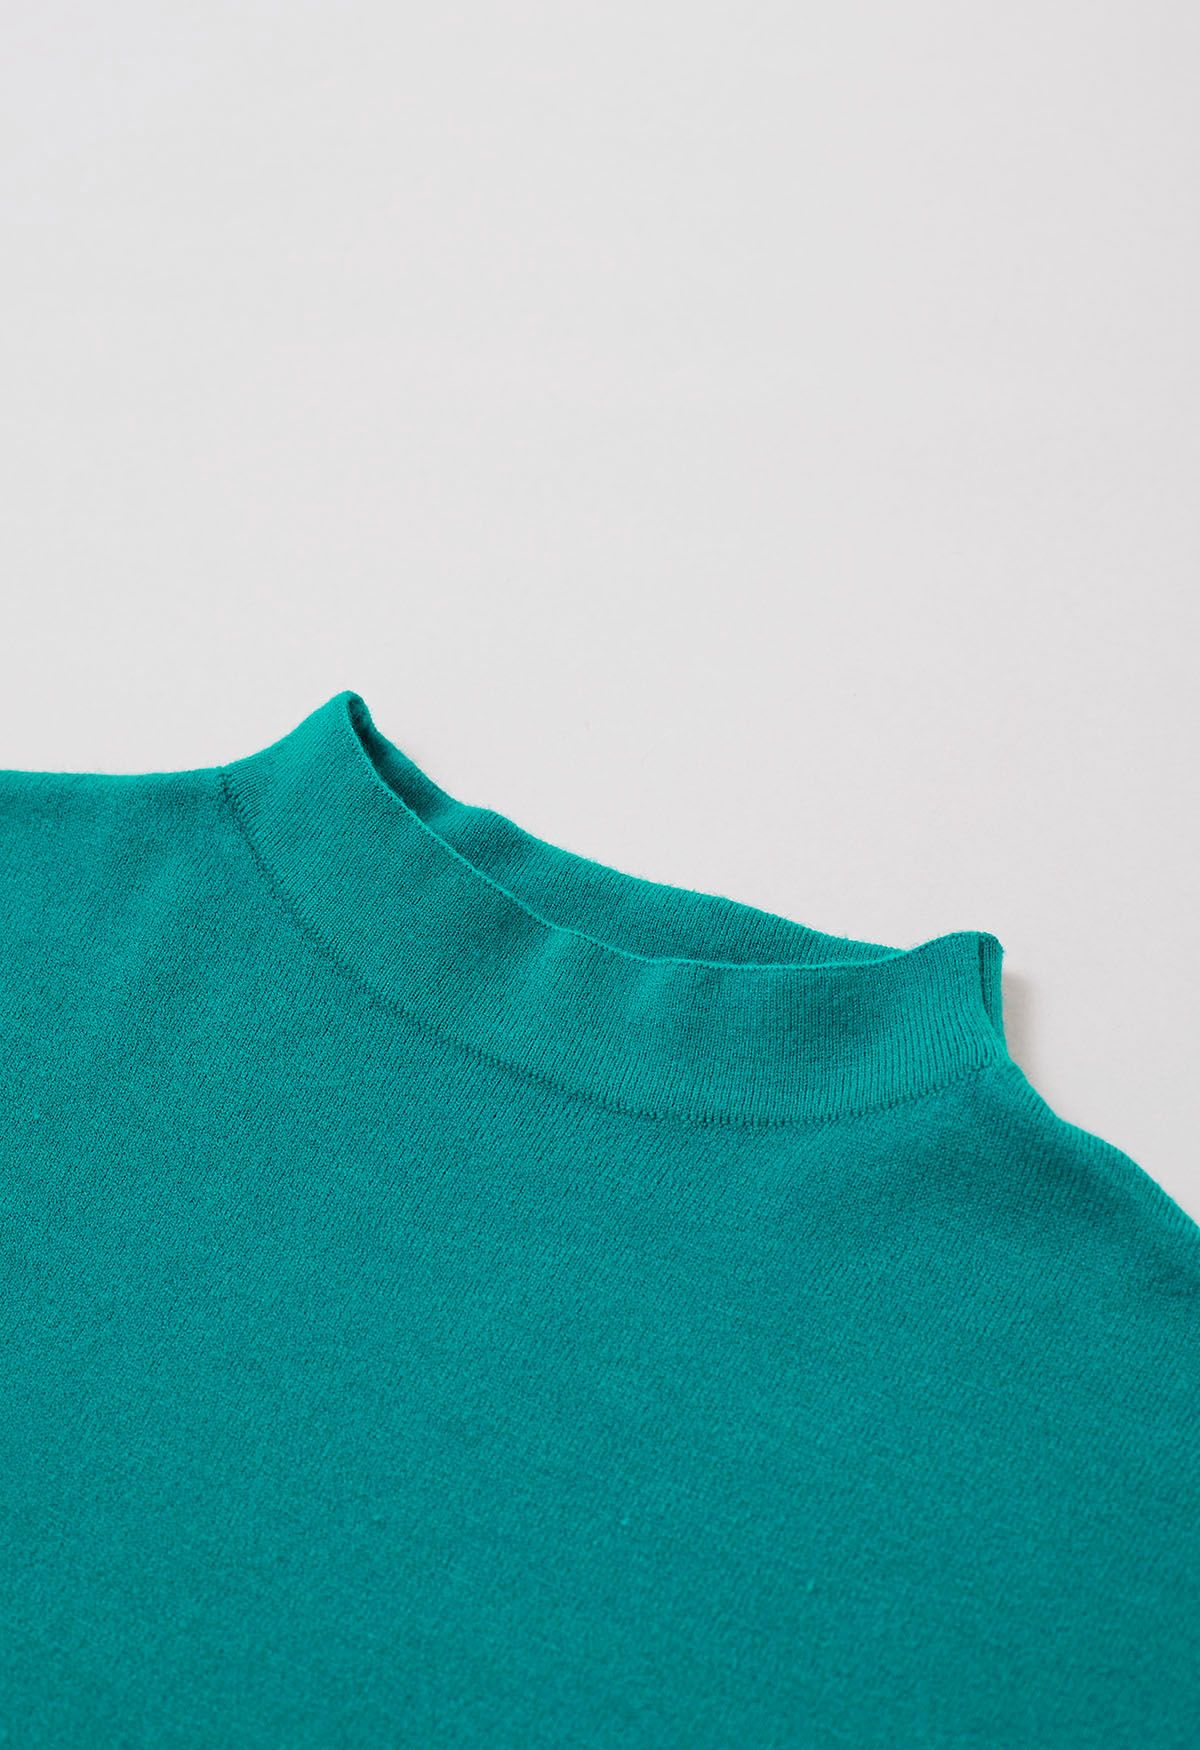 Haut en tricot à manches courtes de couleur unie en turquoise